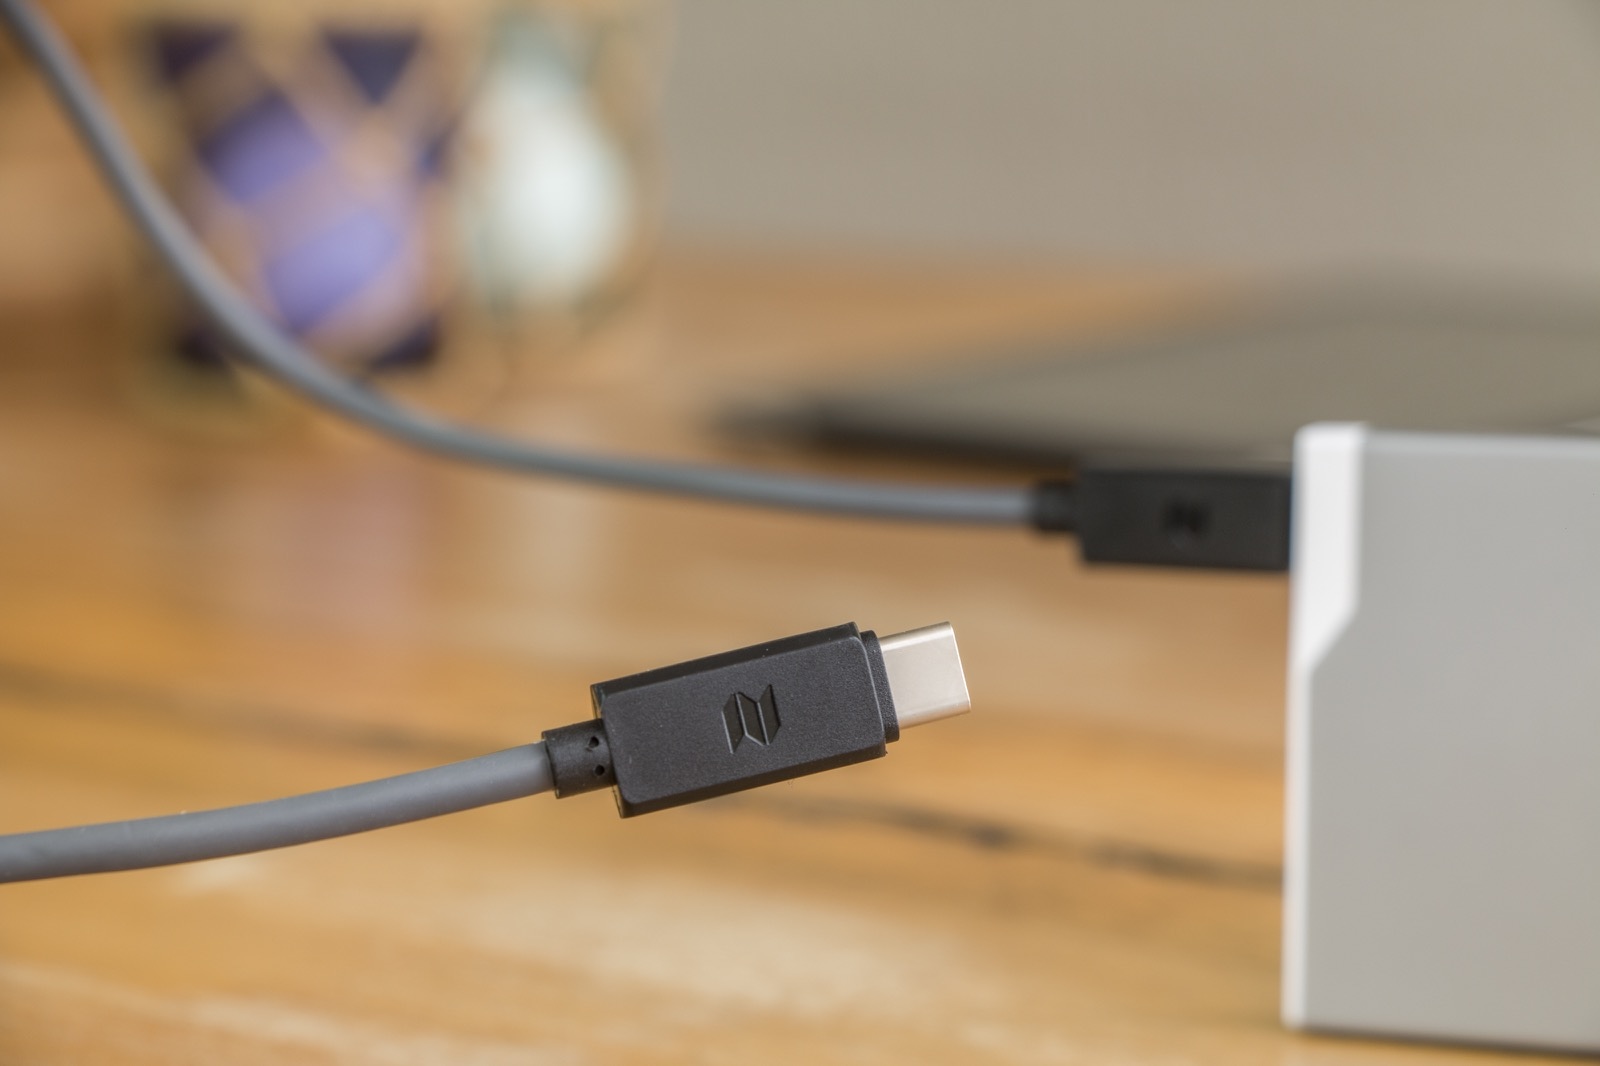 Kas olete kunagi jälginud uut Maci lainet? Siis võib see USB-C lisavarustus teile tähtis olla!